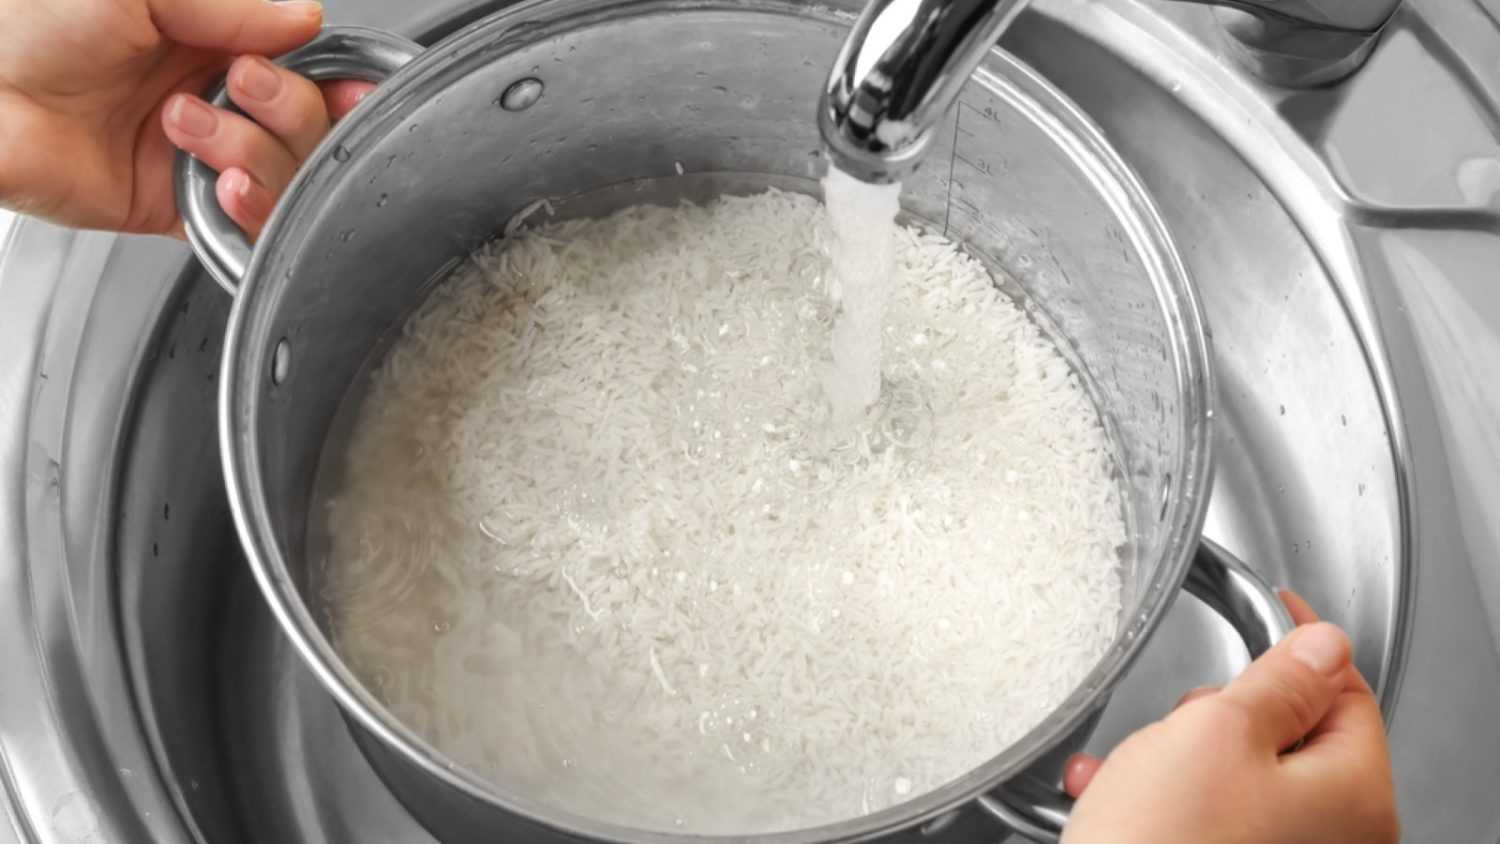 RInsing rice